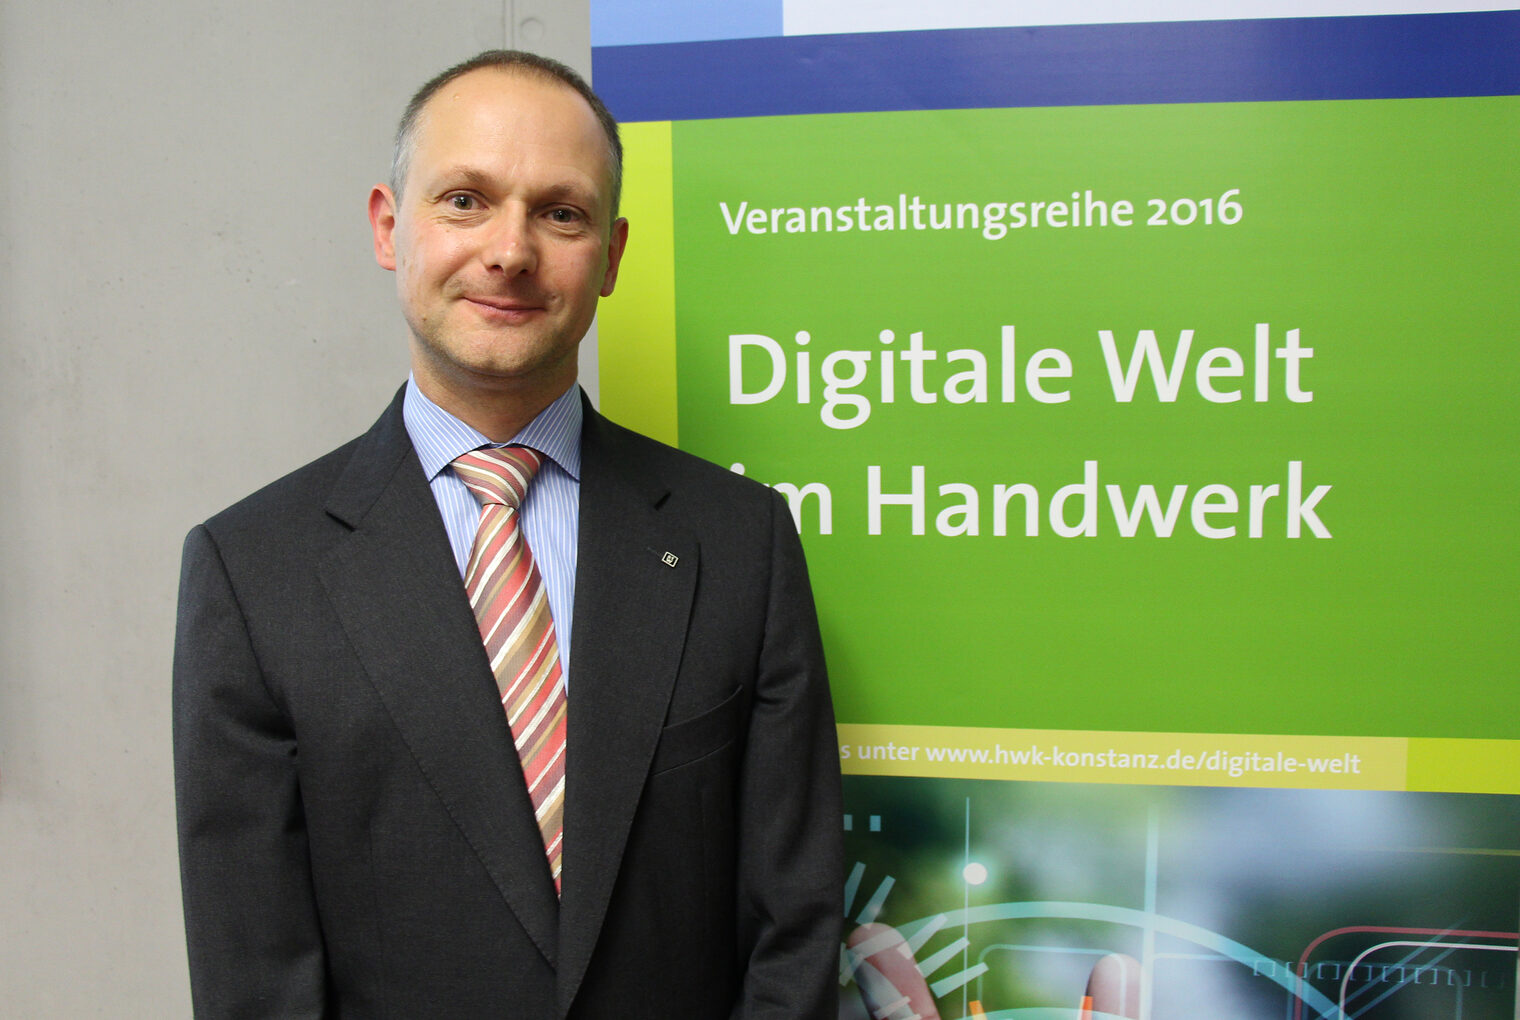 Dirk Koschützki ist Leiter des Steinbeis-Transferzentrums für Cyber- und Informationssicherheit. Bei seinem Vortrag an der Bildungsakademie Singen gab er Handwerkern Tipps zur Sicherung ihrer Daten.